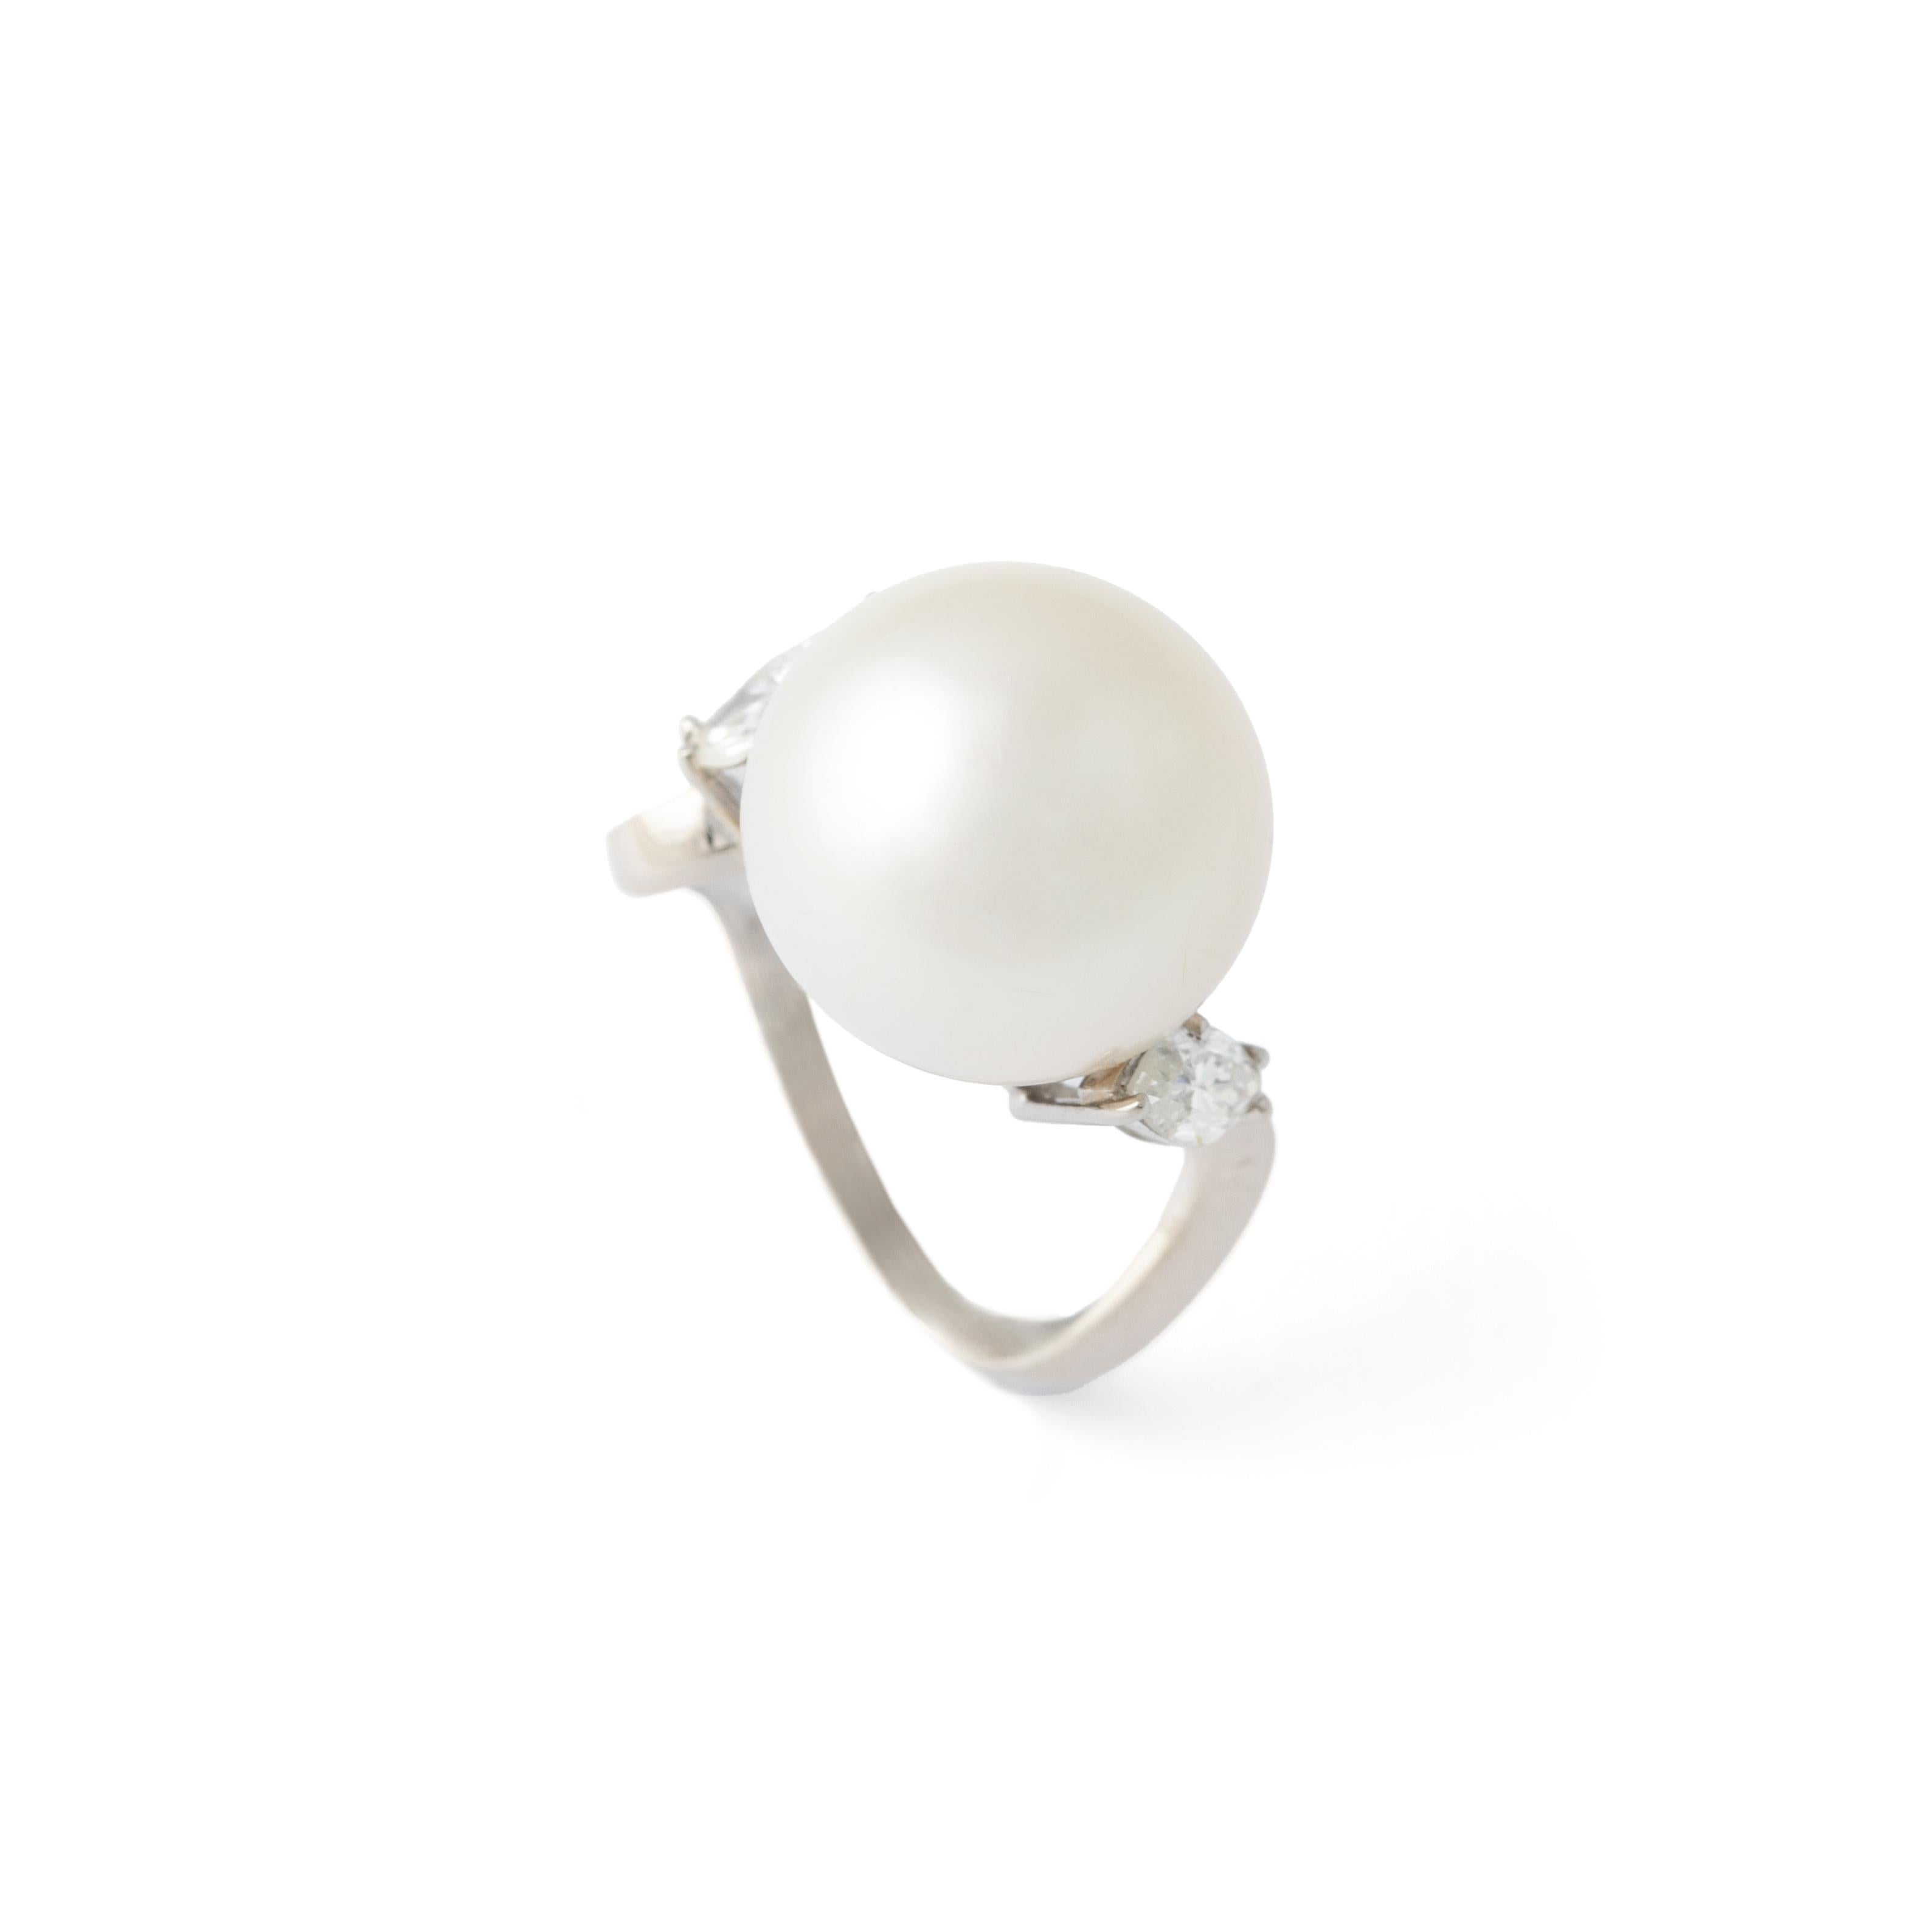 Élevez votre élégance avec notre bague en or blanc à perles de culture et diamants, véritable incarnation de la sophistication et de la grâce. En son cœur se trouve une magnifique perle de culture, d'une dimension de 13,7 mm et d'un poids de 13,97